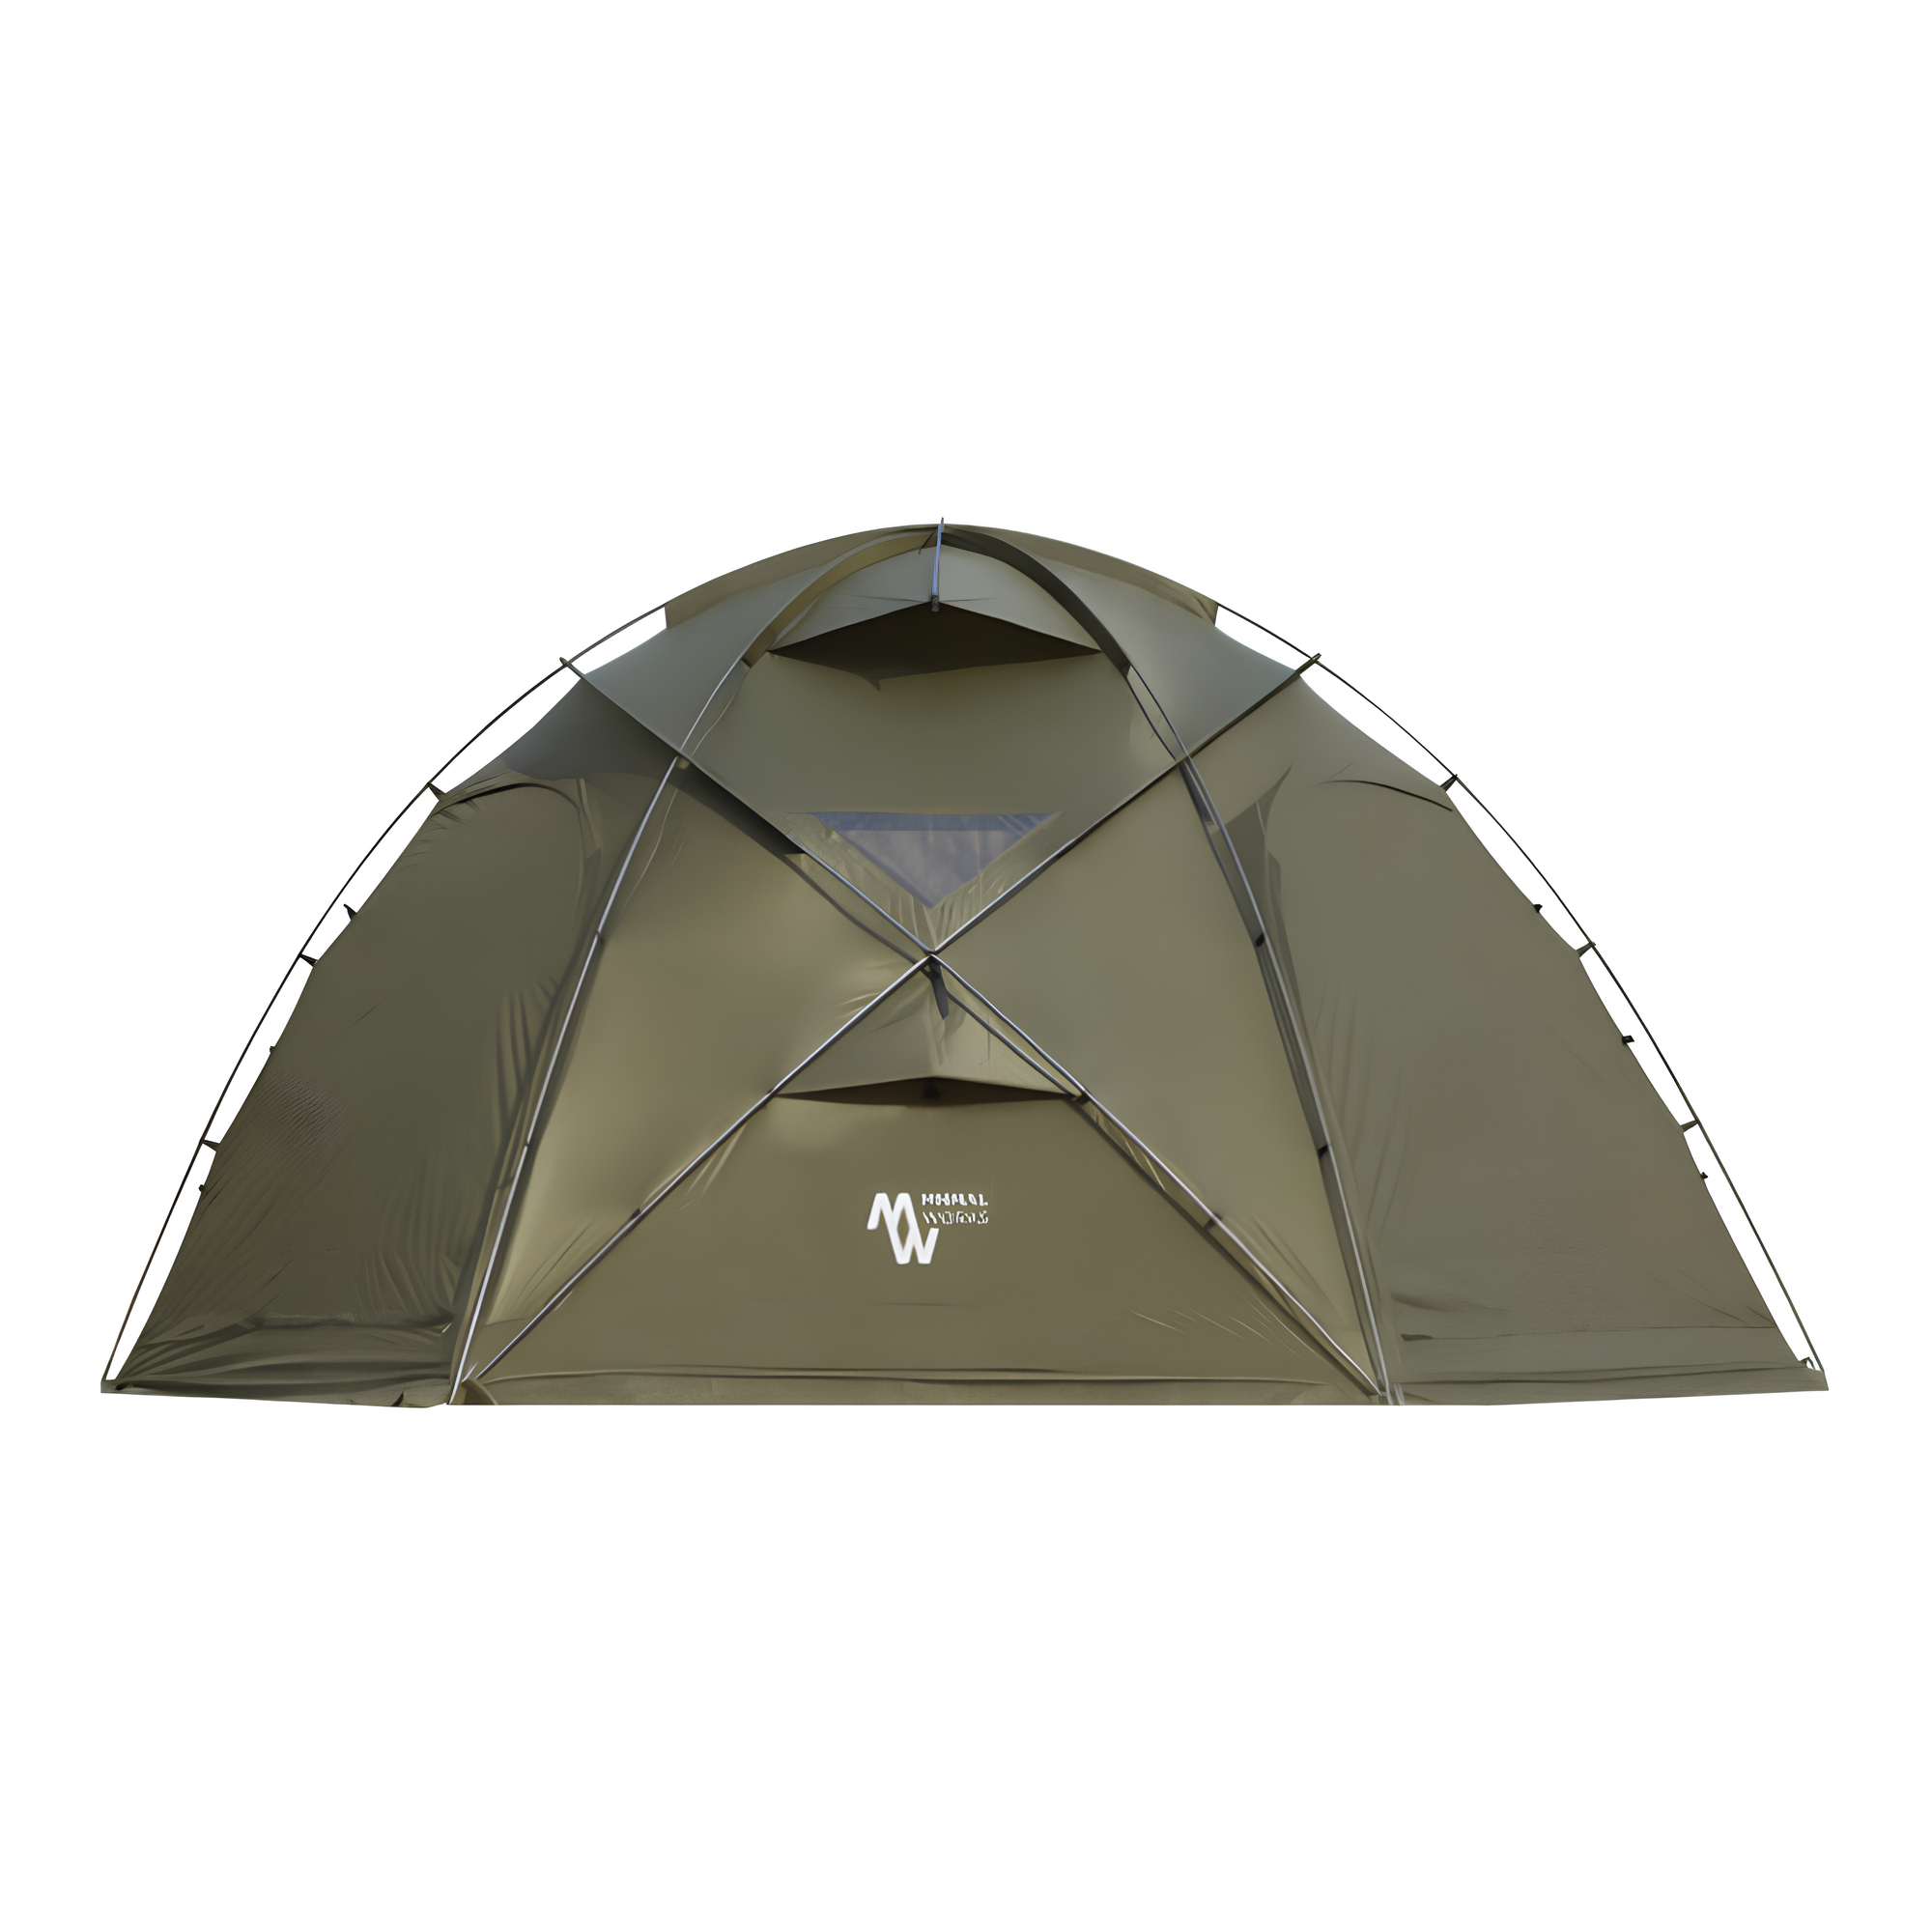 미니멀웍스 캠핑 텐트 망고스테이션 플러스 올리브 수납가방 세트